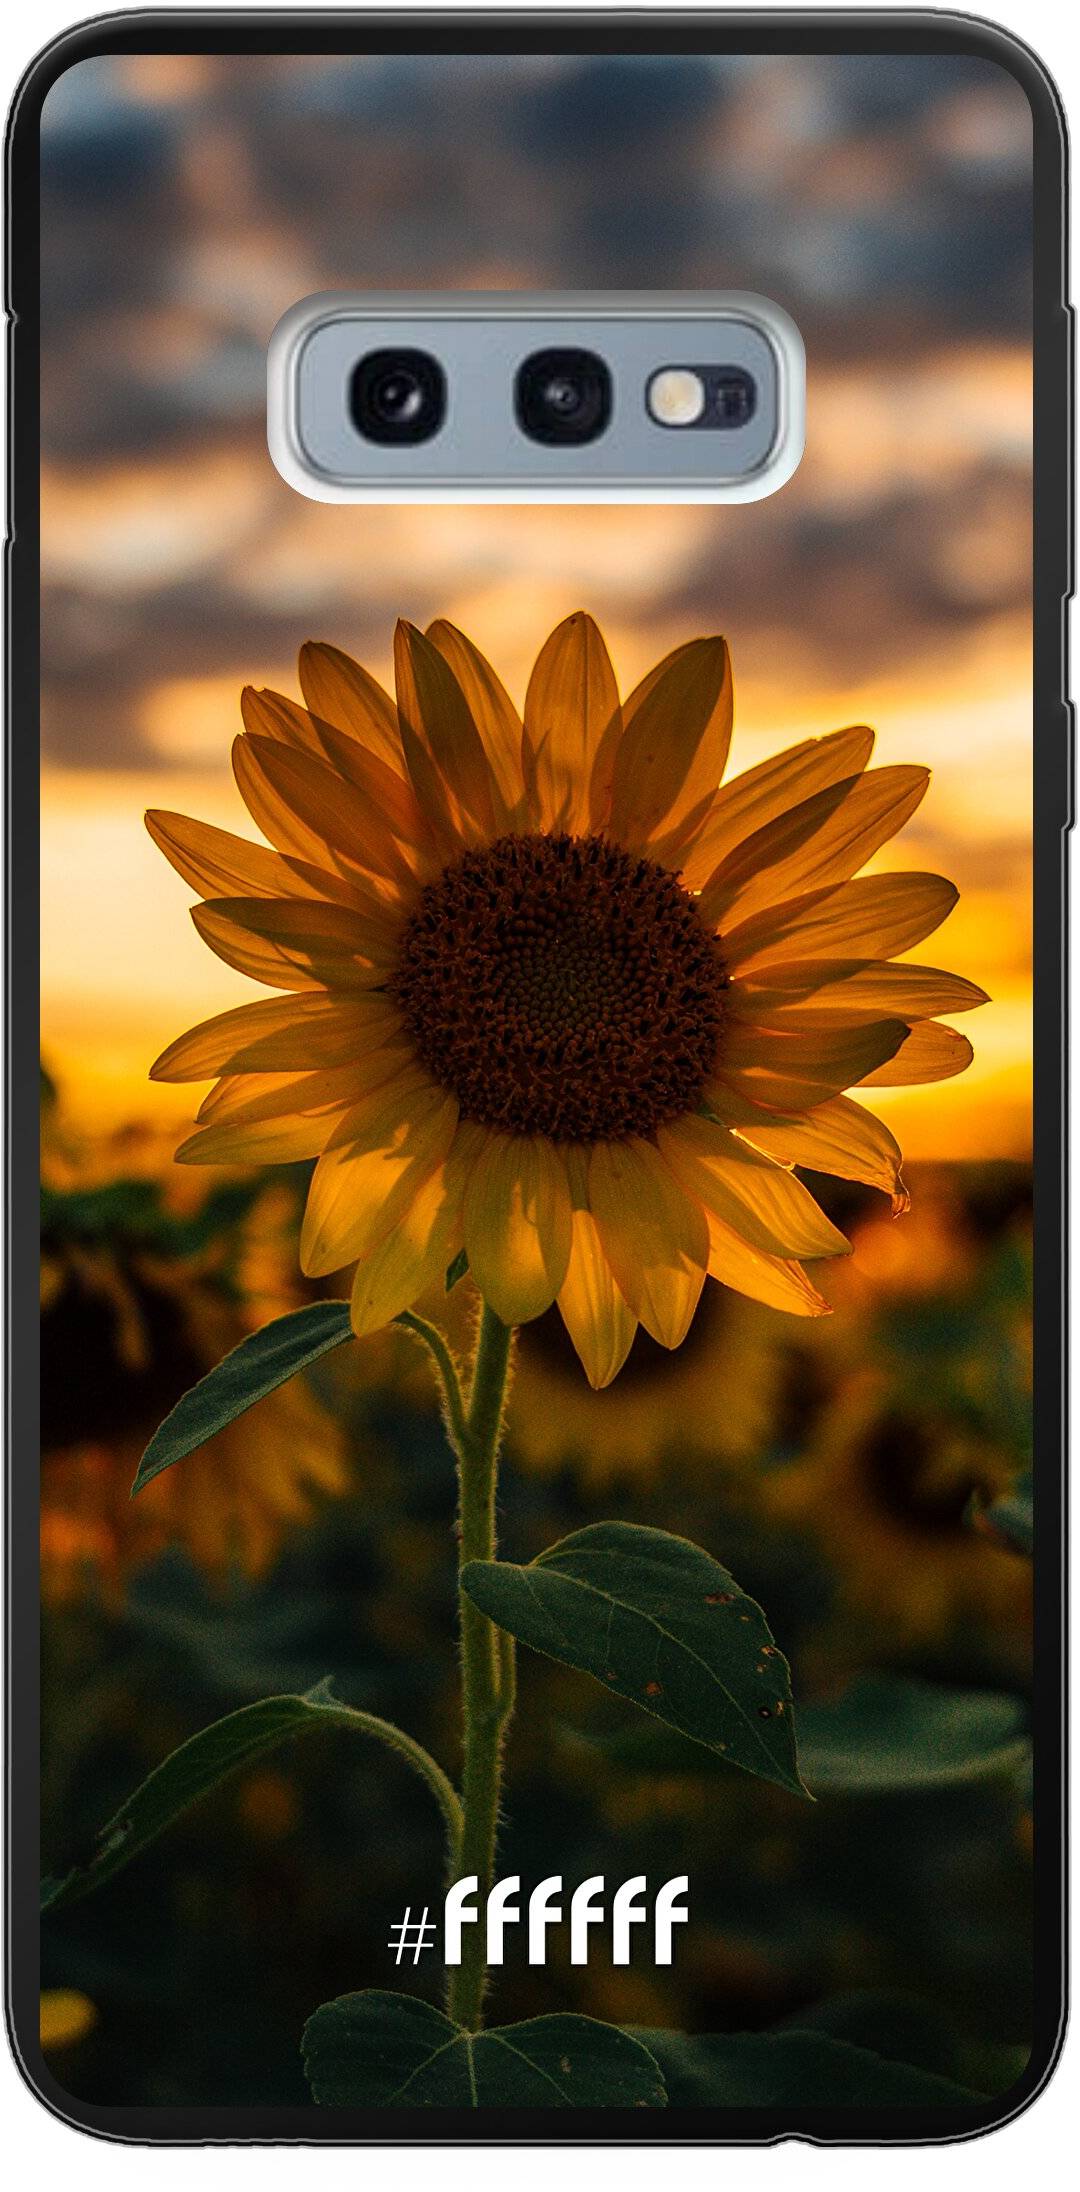 Sunset Sunflower Galaxy S10e